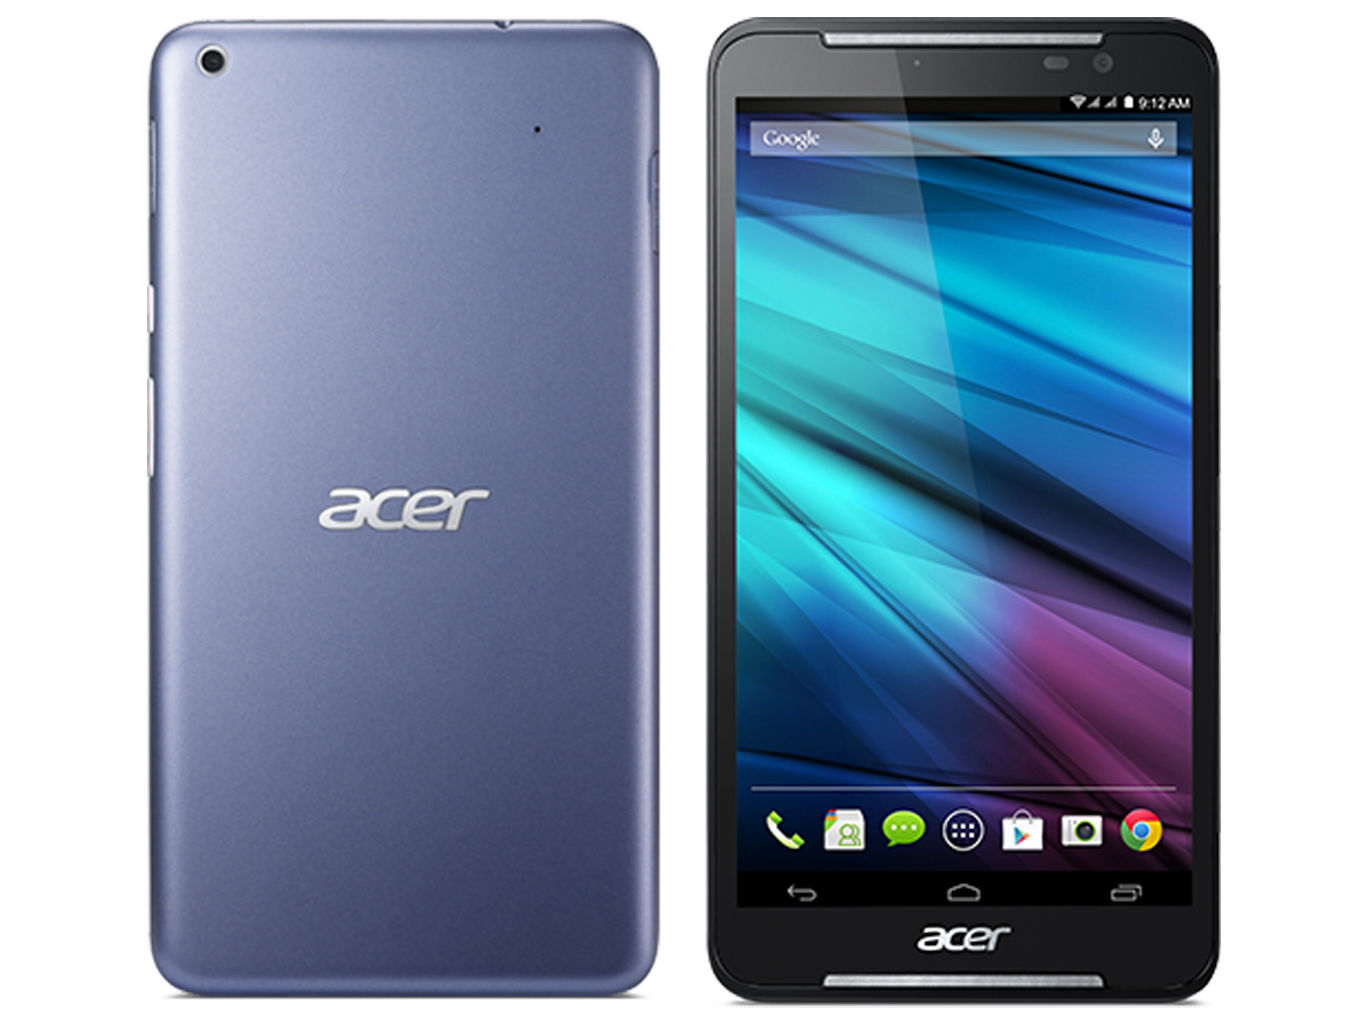 Acer Iconia Talk S แท็บแล็ต หน้าจอ 7นิ้ว พร้อมสเปคจัดเต็มในราคาน่าจับจอง